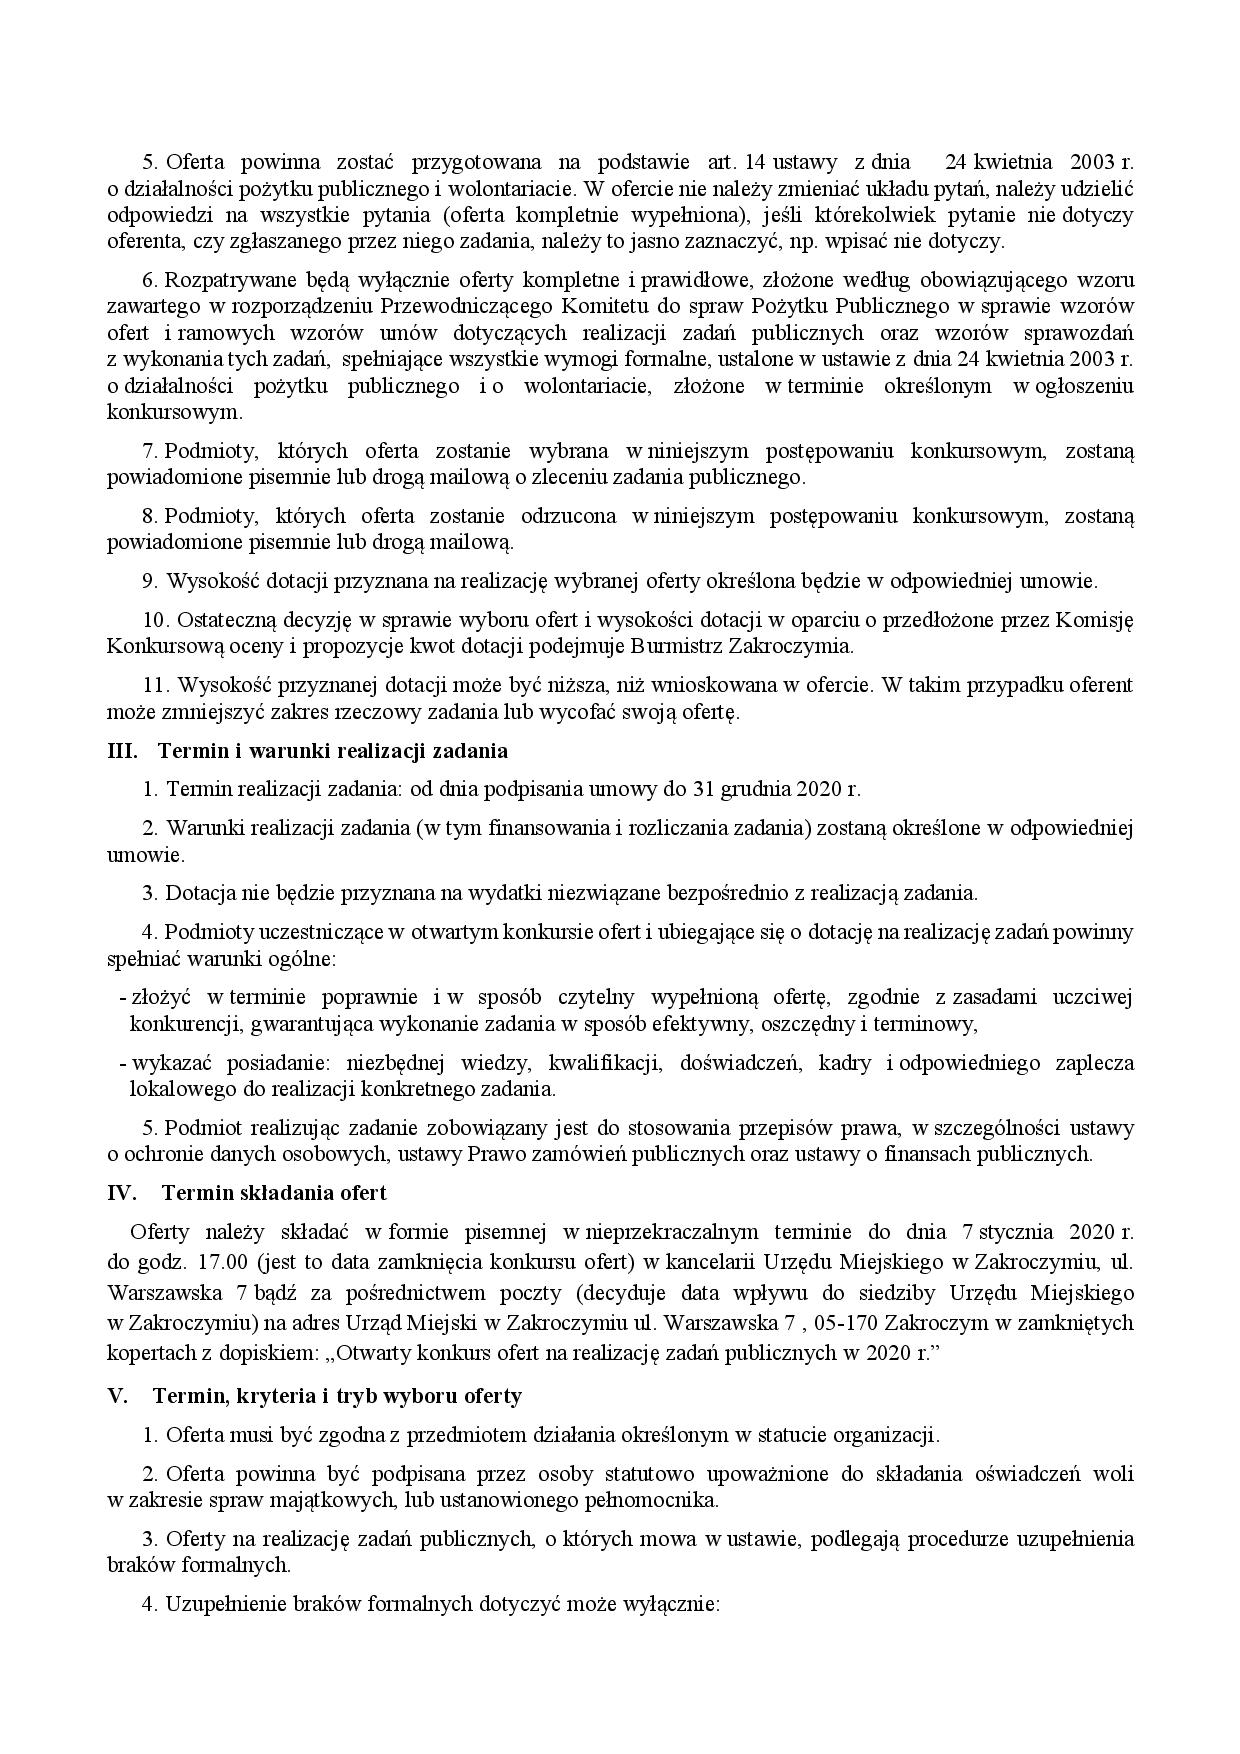 Zarz_konkurs NGOs 2020_prawnik parafka_podpis-page-004